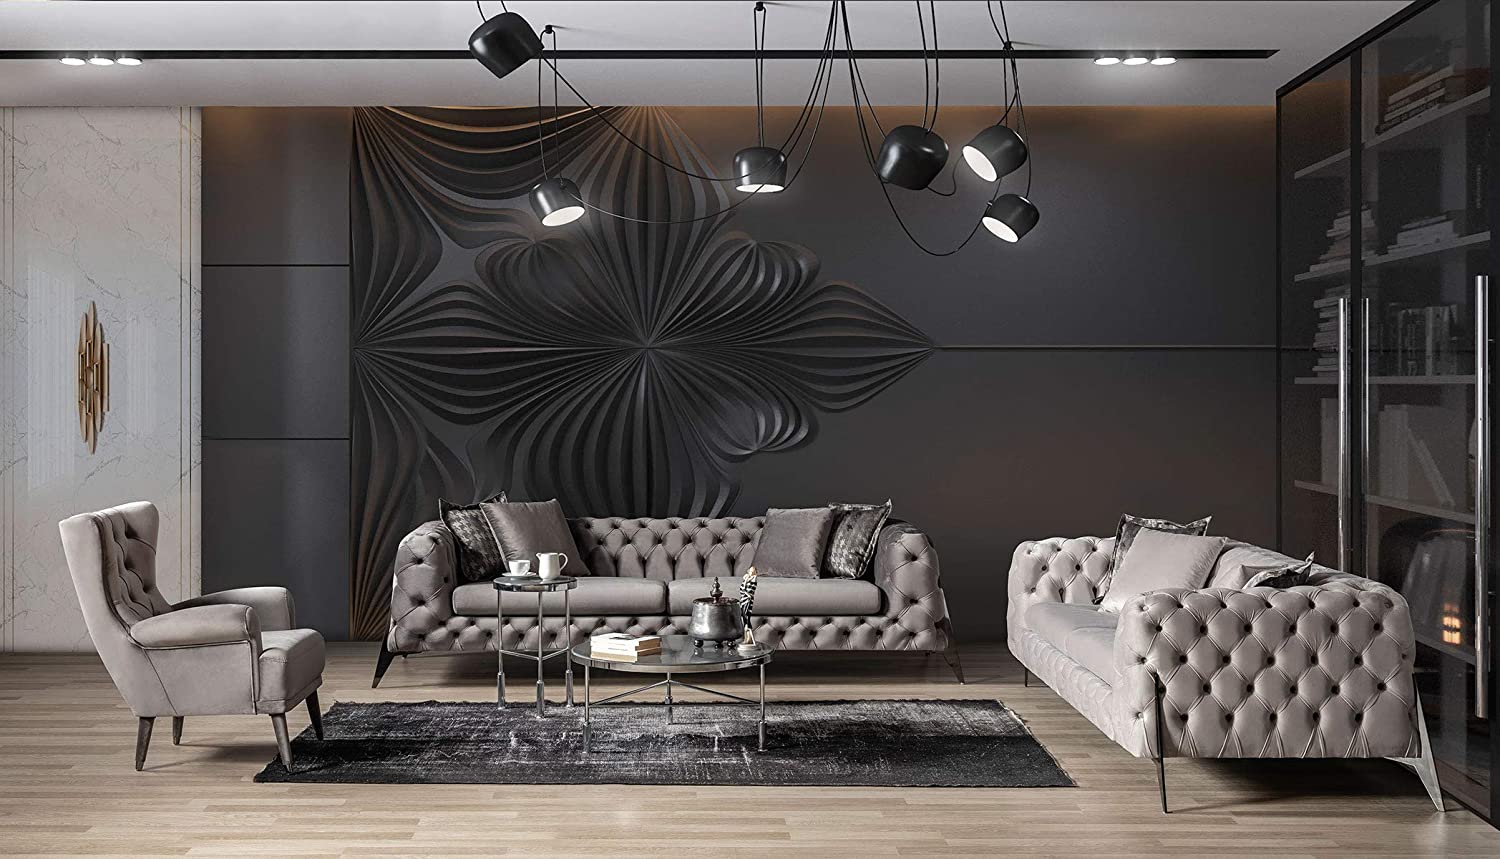 Designer Sofa Set:- 2+2+1, Fabric 5 Seater Chesterfield Luxury Furniture Sofa Set (Cream)